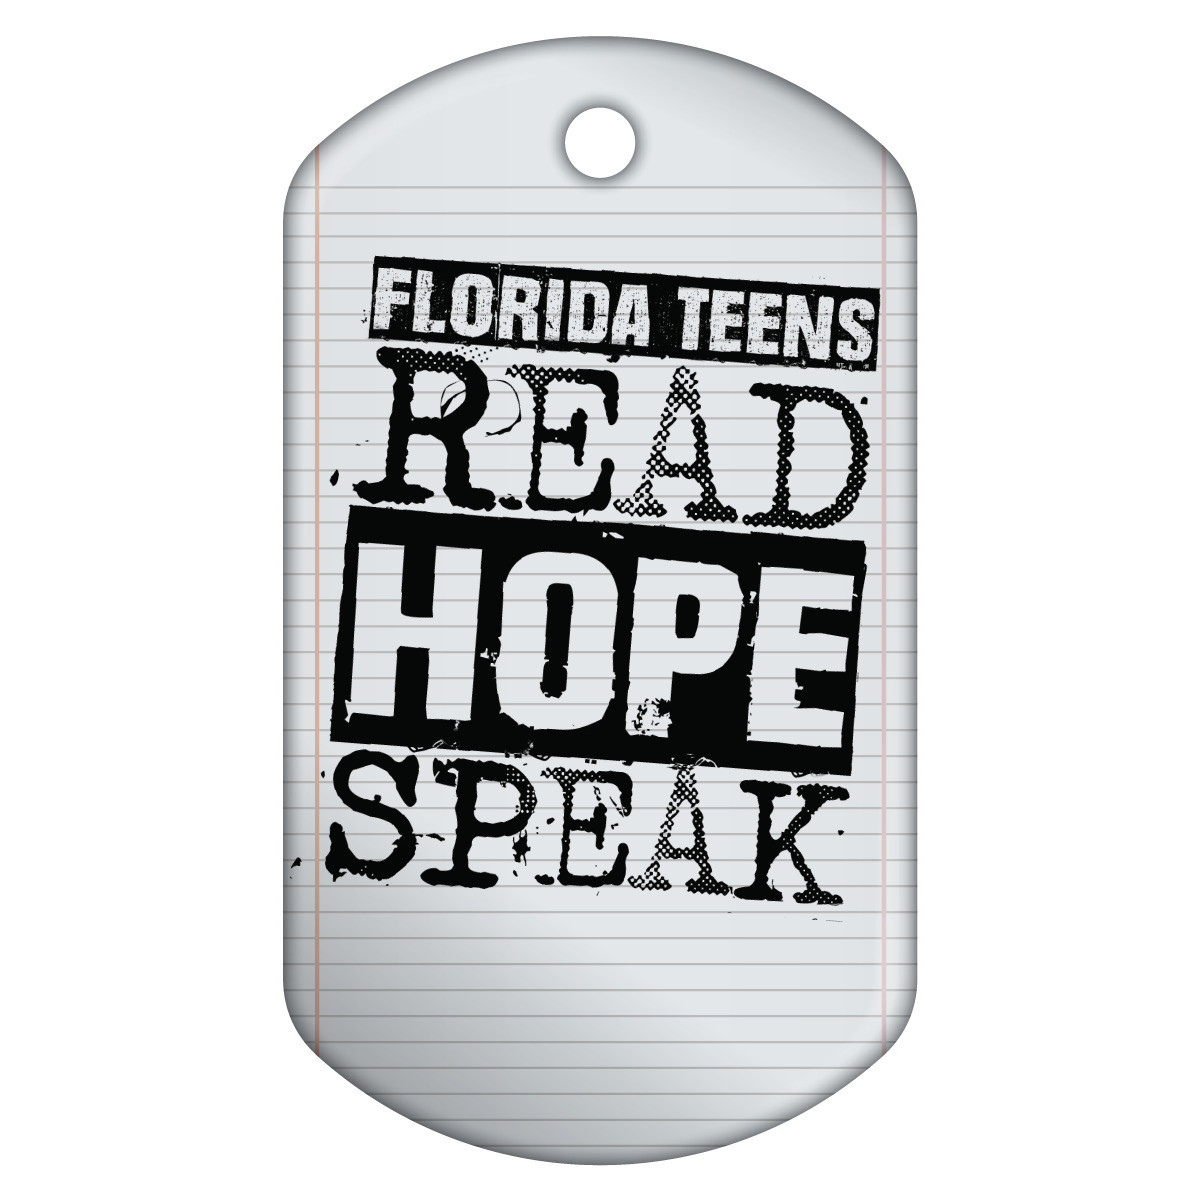 Dog Brag Tags - Florida Teens Read Hope Speak